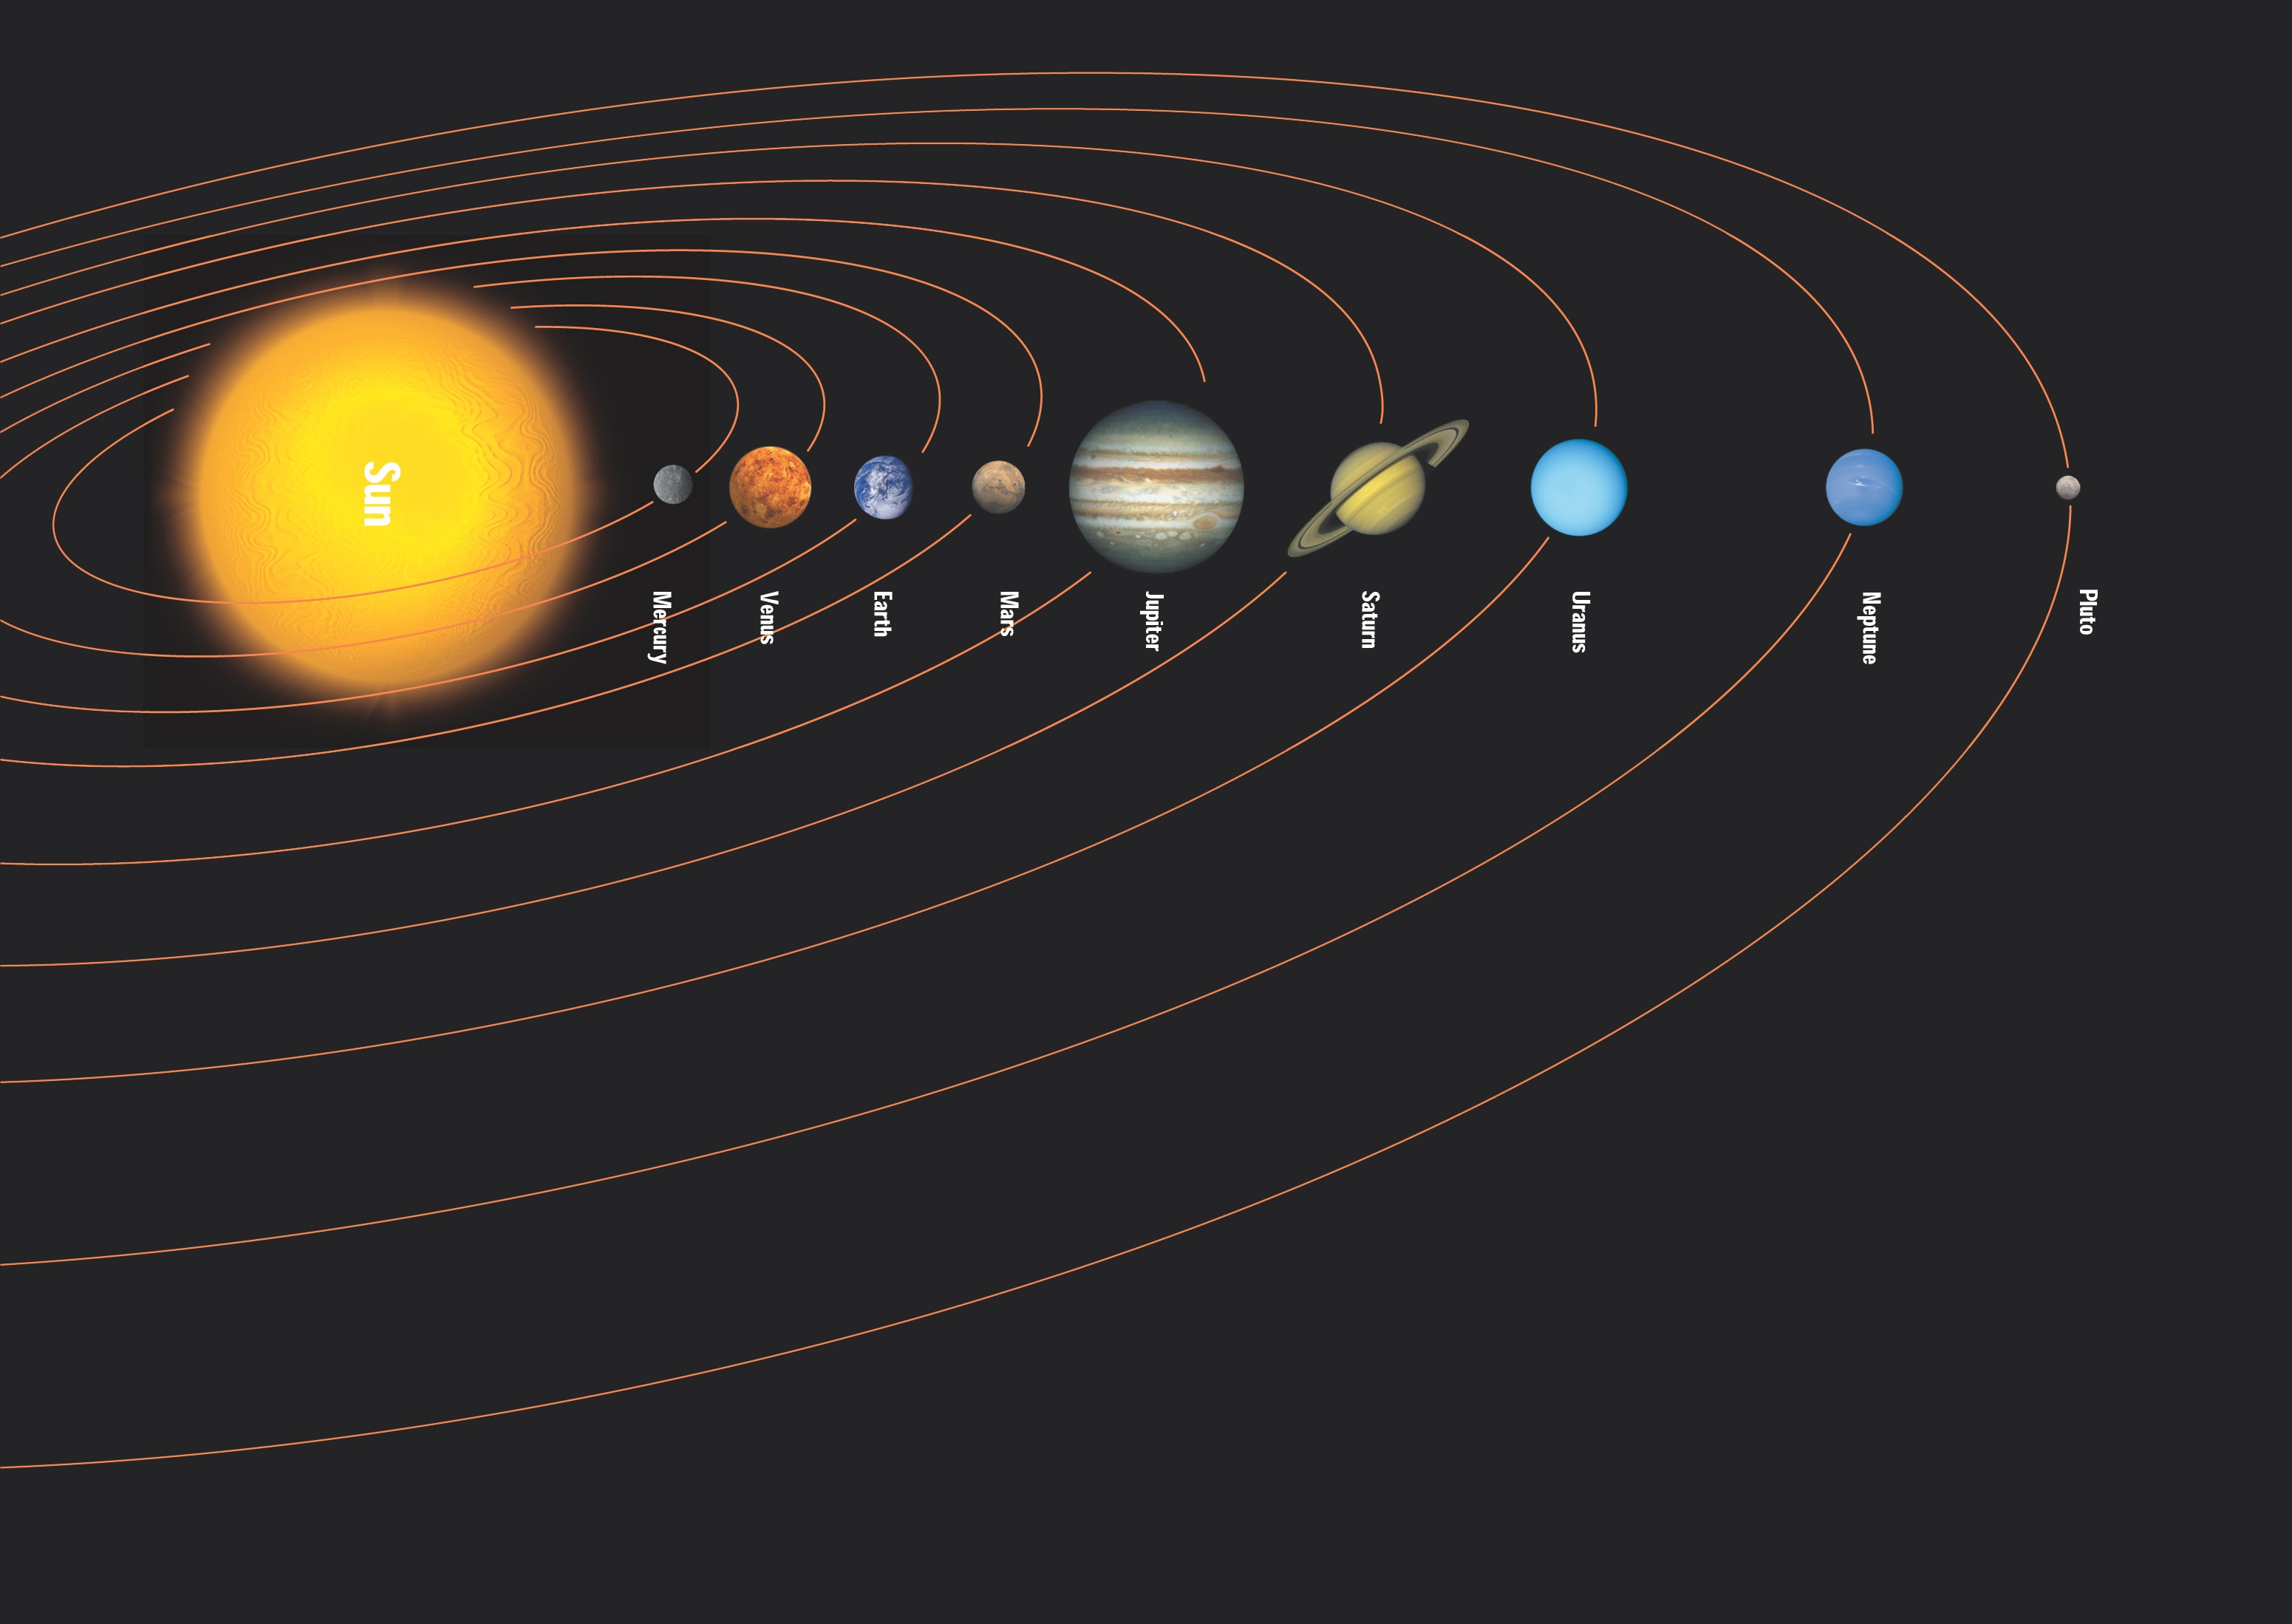 Картинки планеты по порядку от солнца